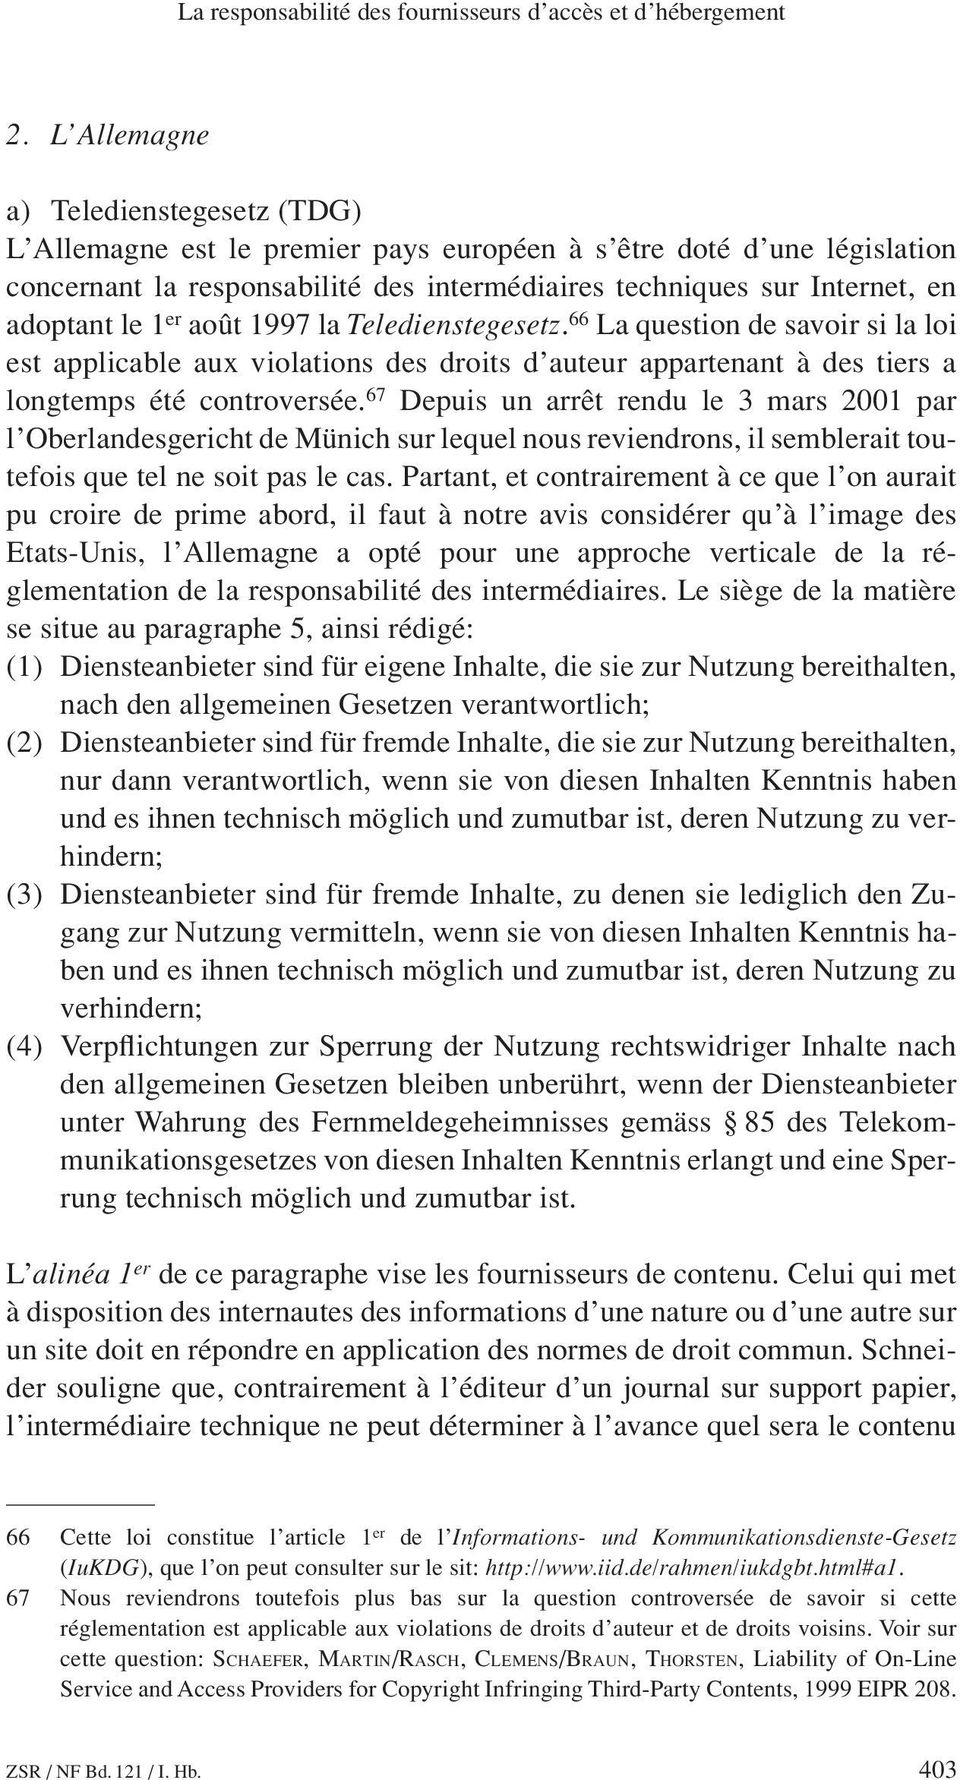 1 er août 1997 la Teledienstegesetz. 66 La question de savoir si la loi est applicable aux violations des droits d auteur appartenant à des tiers a longtemps été controversée.